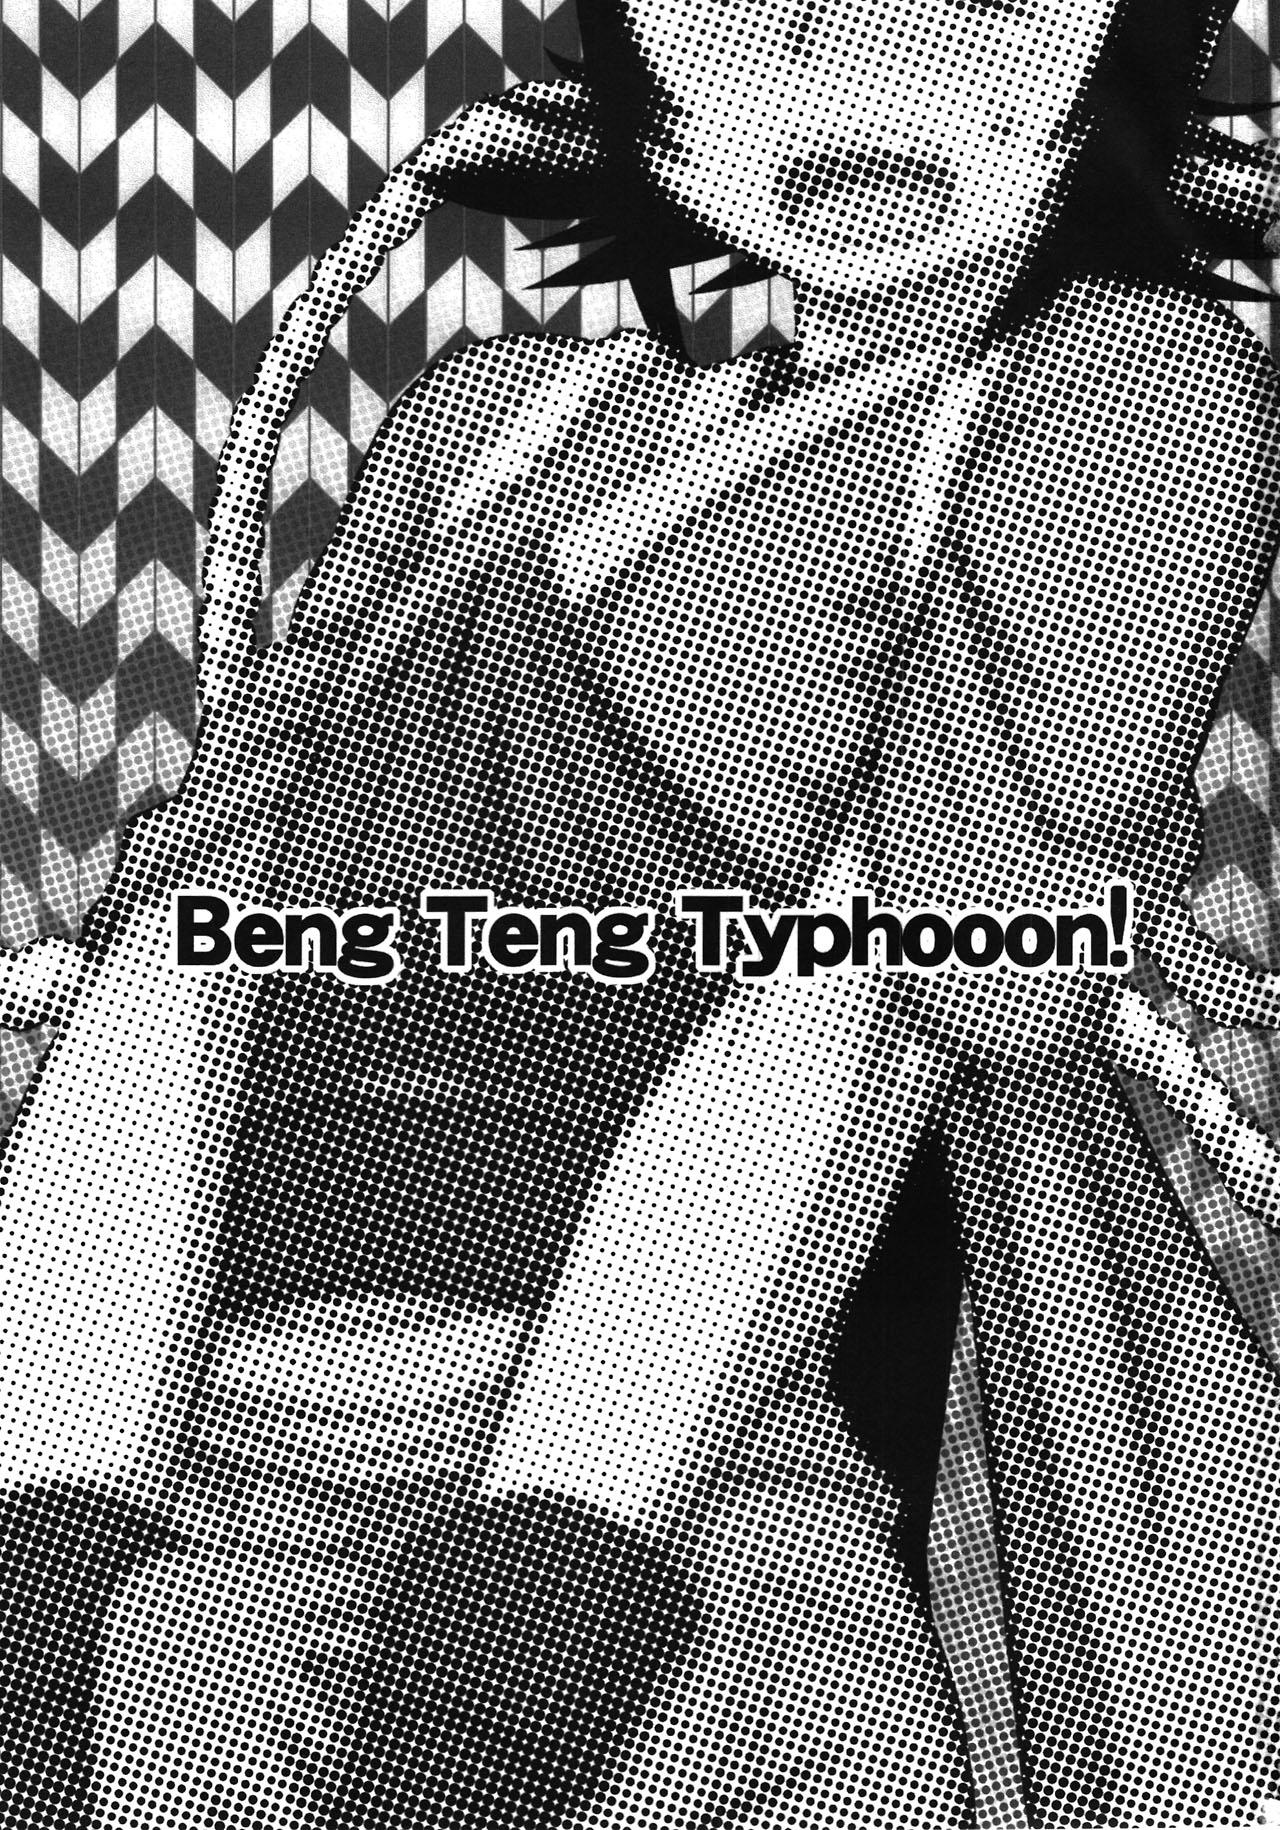 Beng Teng Typhooon! 2